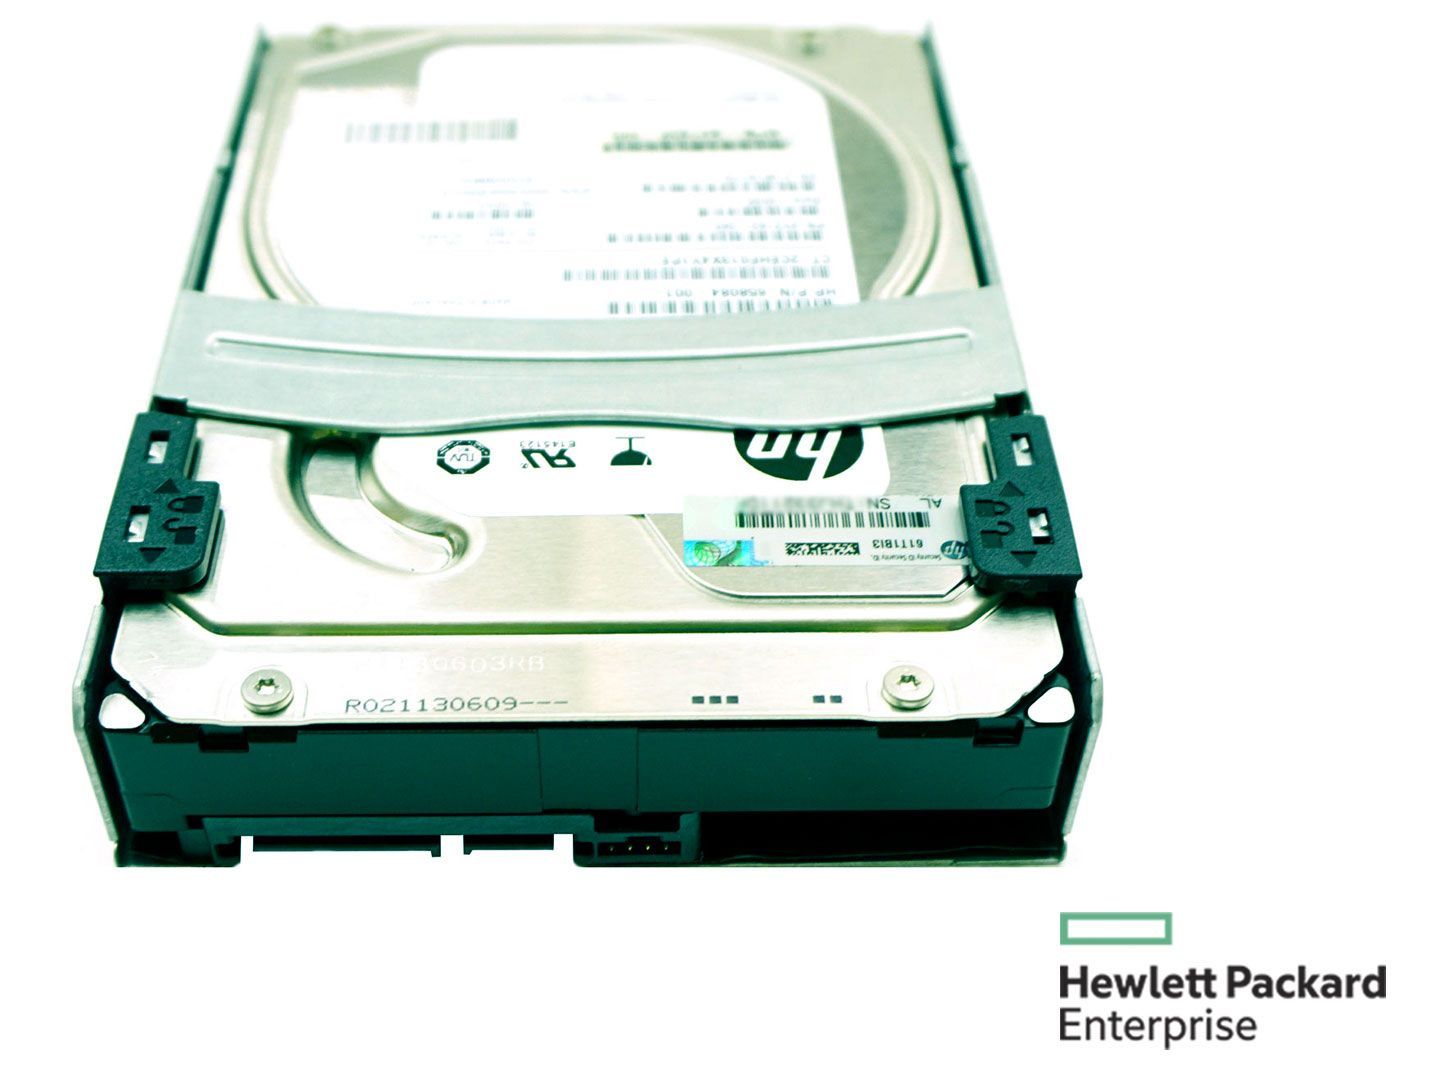 HP 647347 - 001 3tb SATAハードディスクドライブ - 200 RPM、6 GB /秒